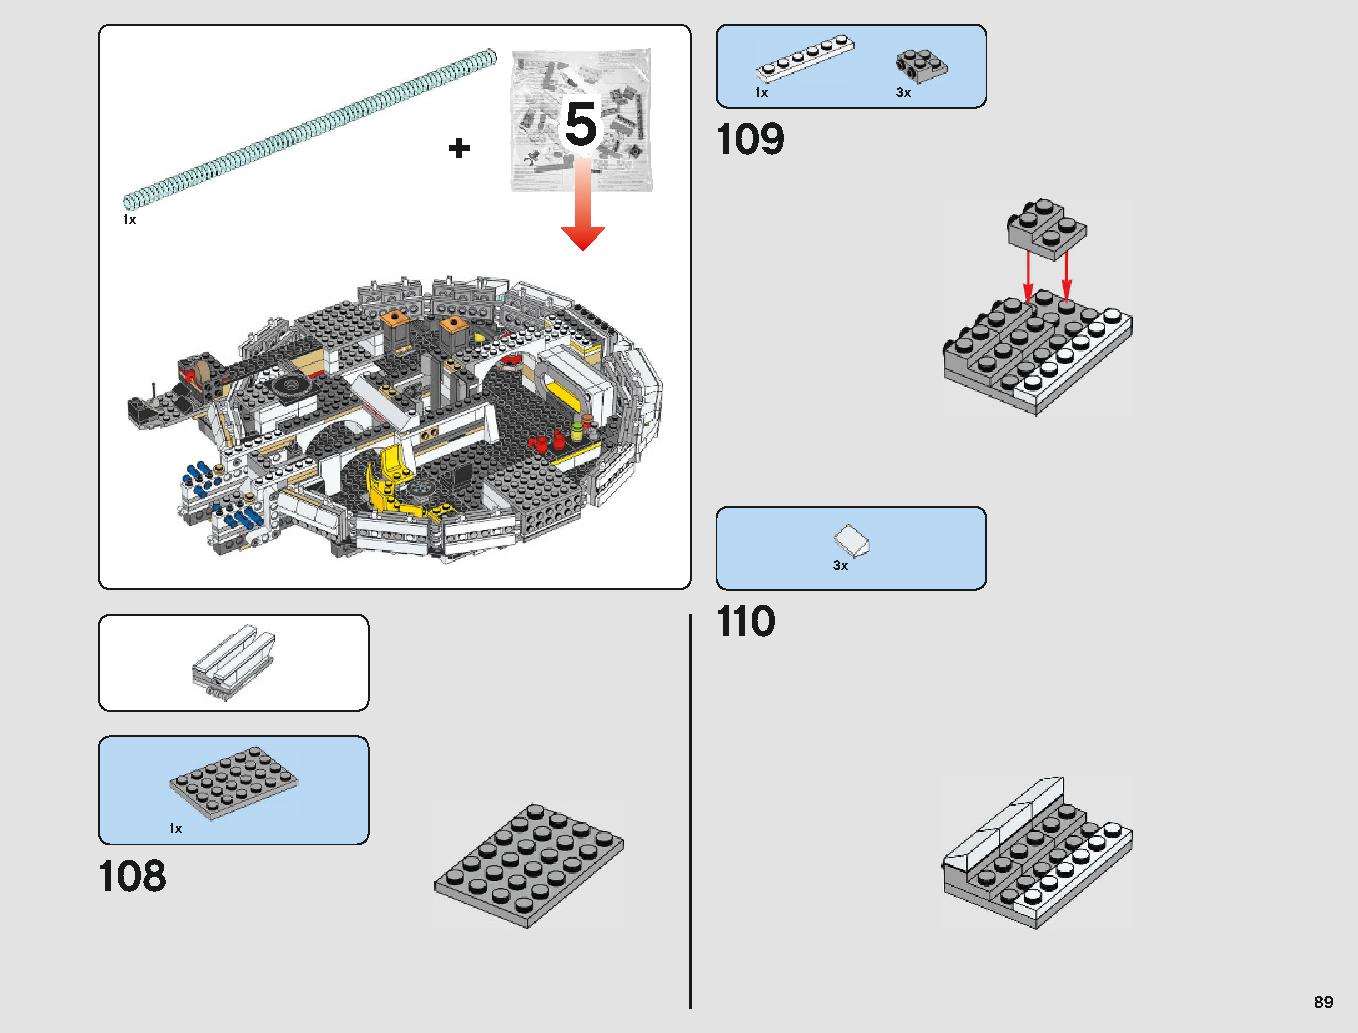 ミレニアム・ファルコン 75212 レゴの商品情報 レゴの説明書・組立方法 89 page